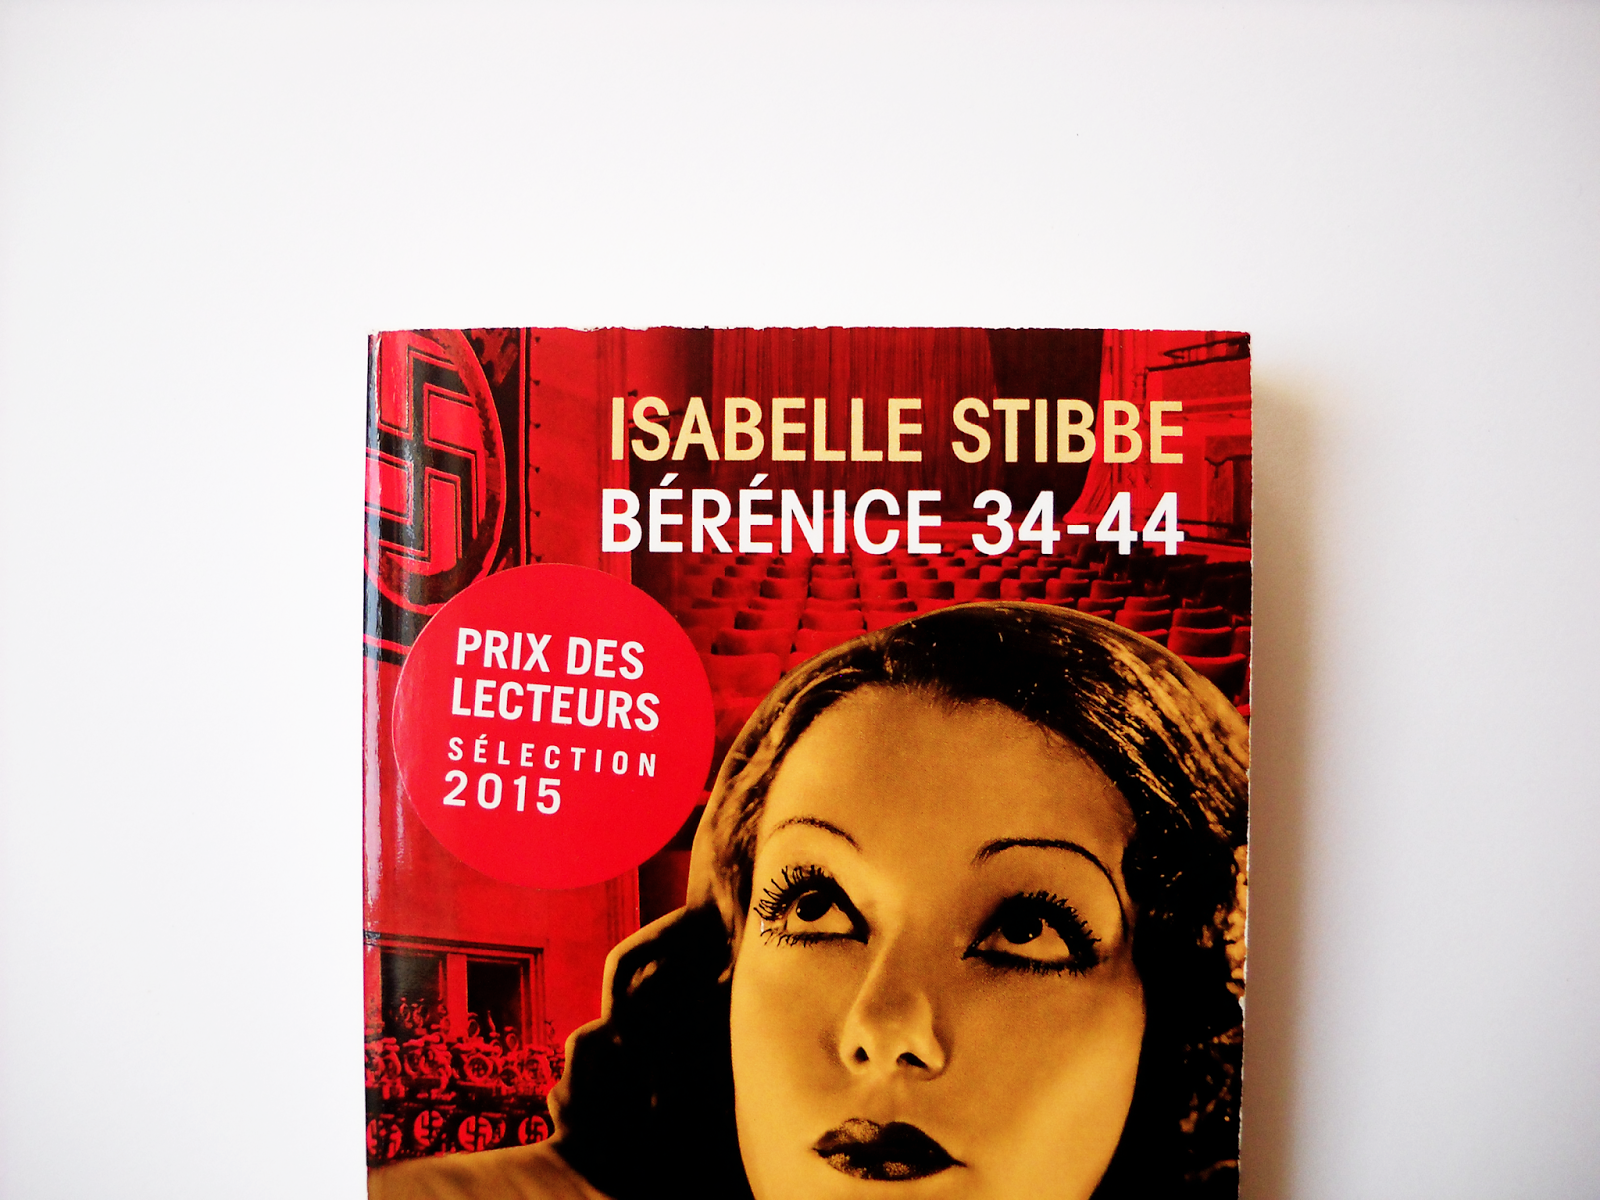 Bérénice 34-44 [Isabelle Stibbe]